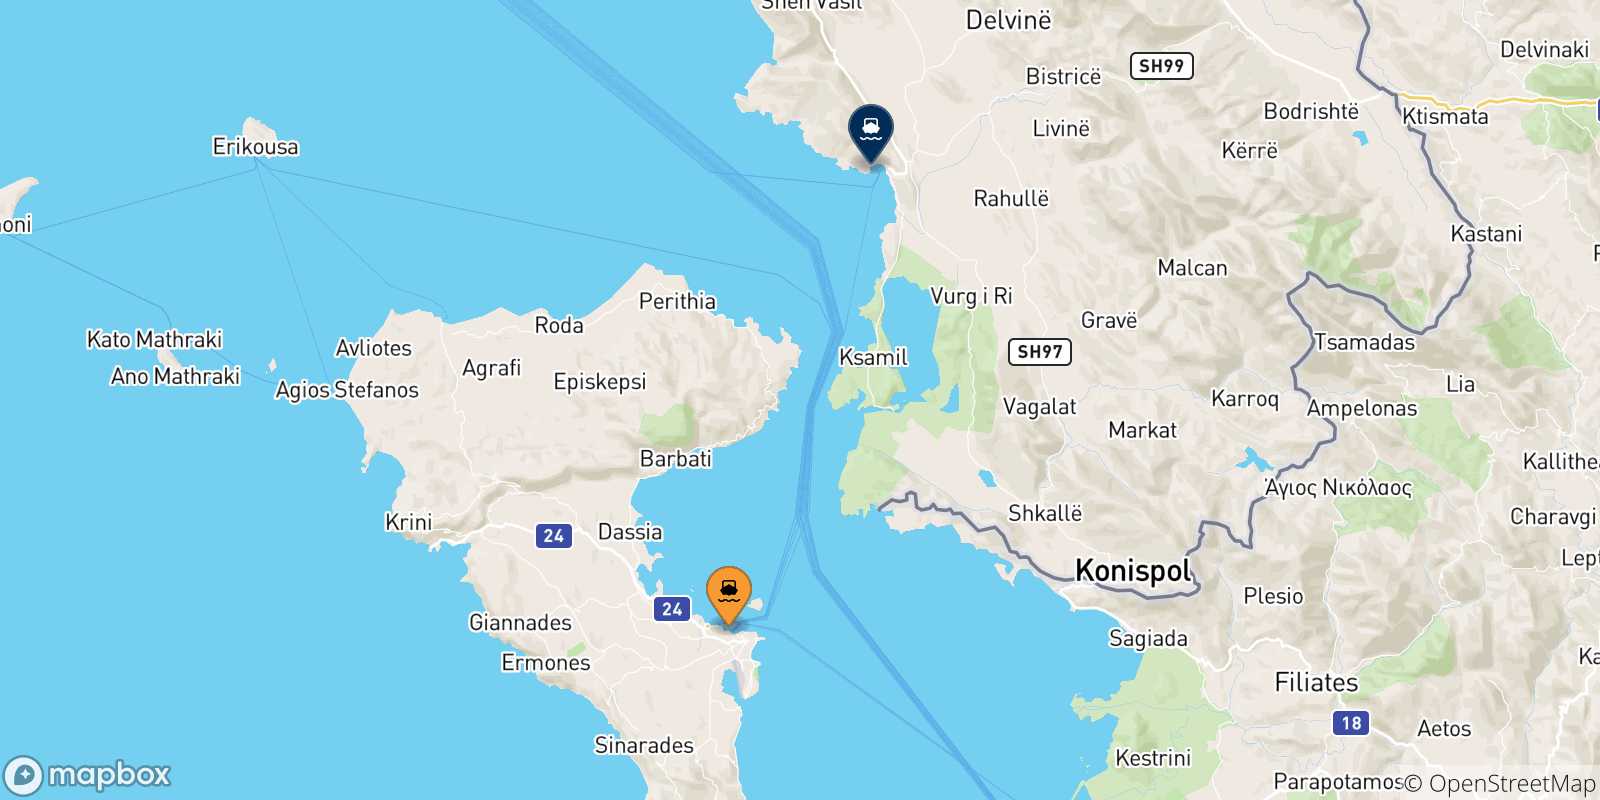 Mappa delle possibili rotte tra la Grecia e Saranda